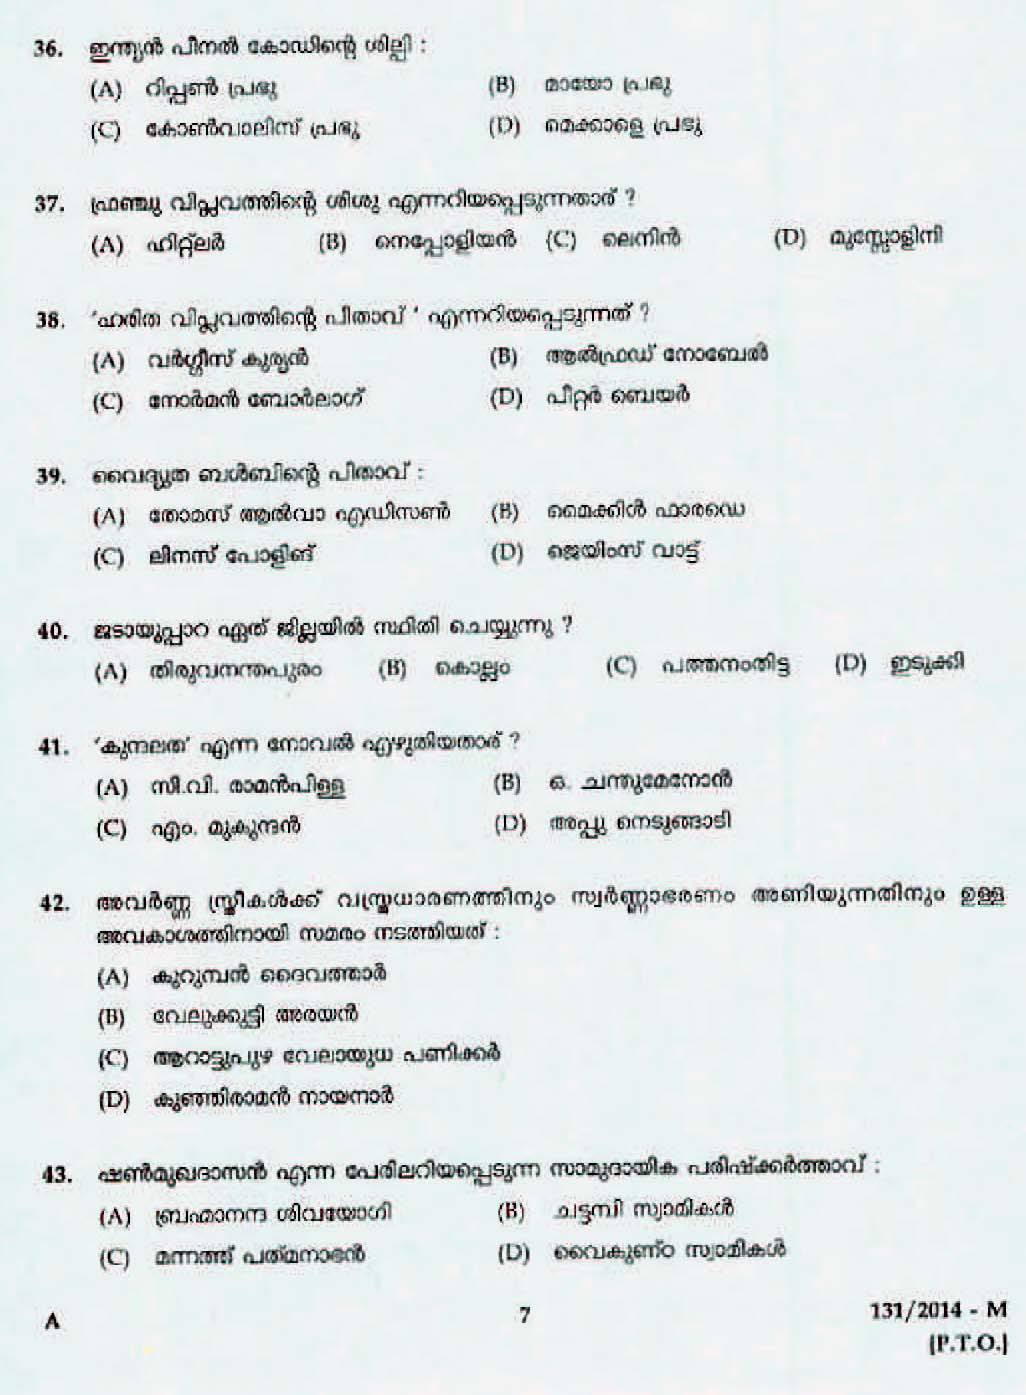 Kerala Last Grade Servants Exam 2014 Question Paper Code 1312014 M 5